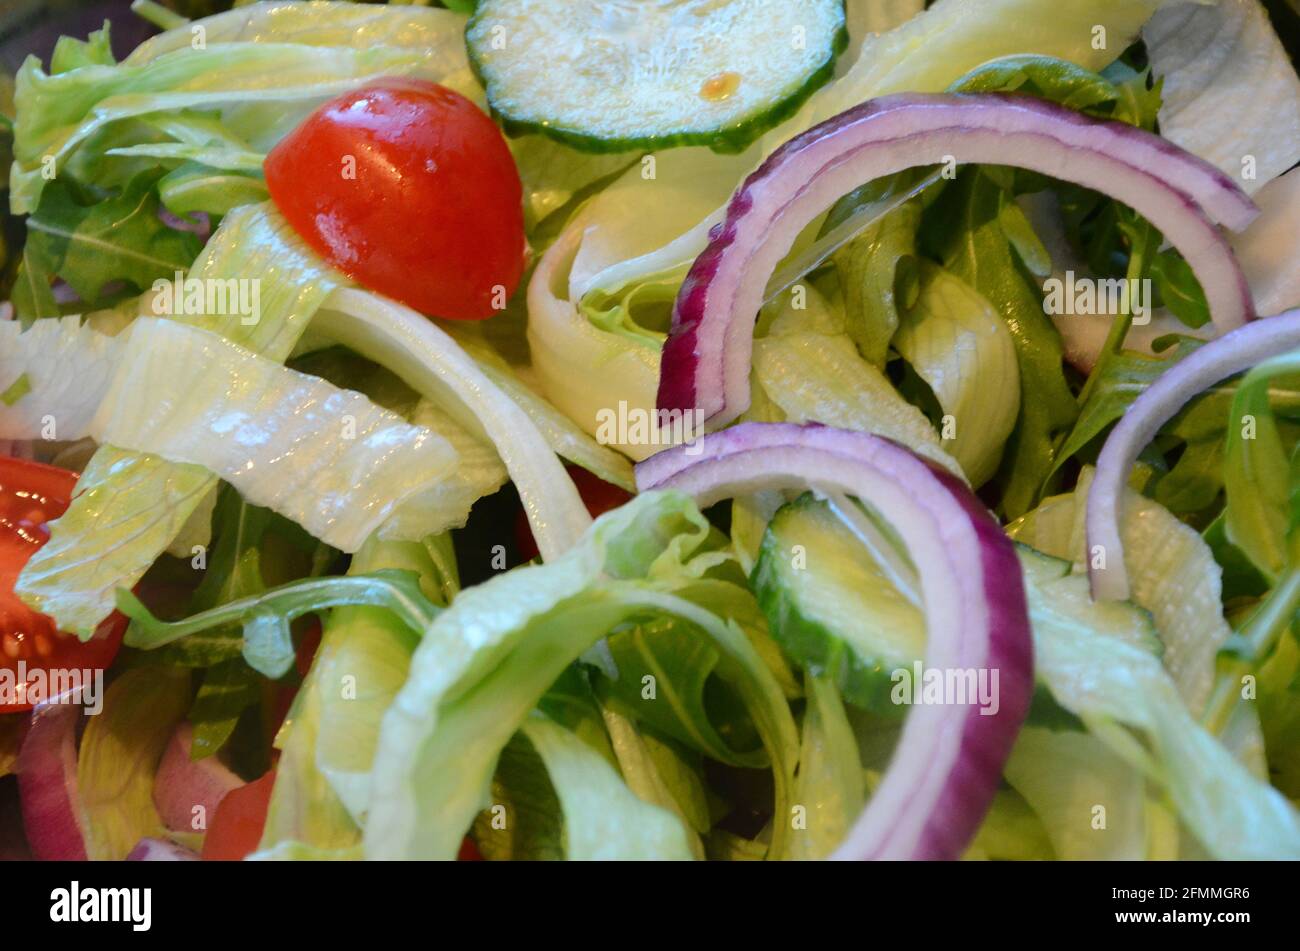 mixed fresh salad bowl, side dish for summer menu Stock Photo